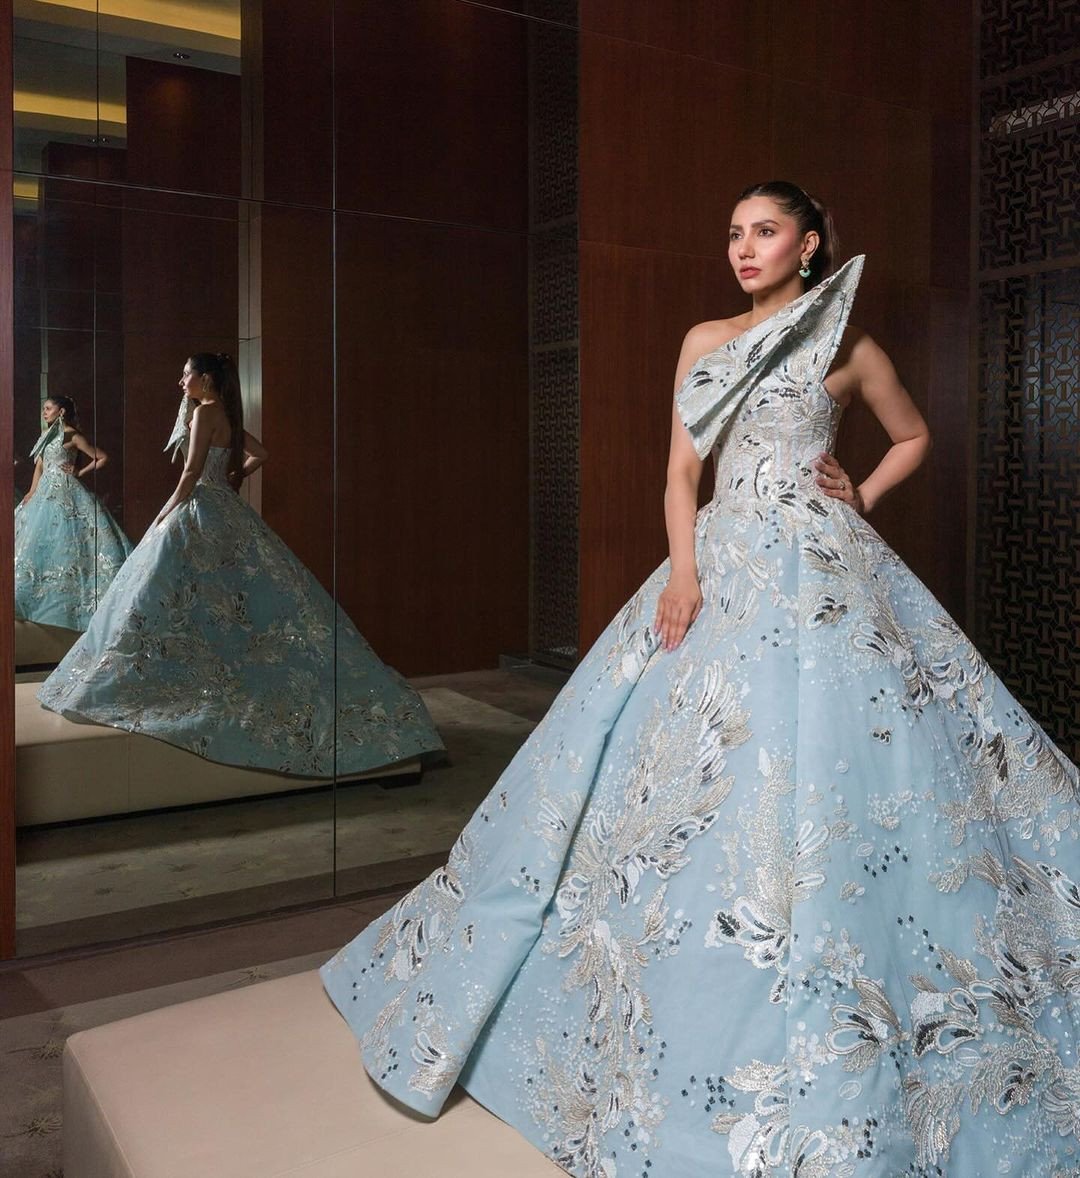 Mahira Khan clinches Artist in Fashion honour